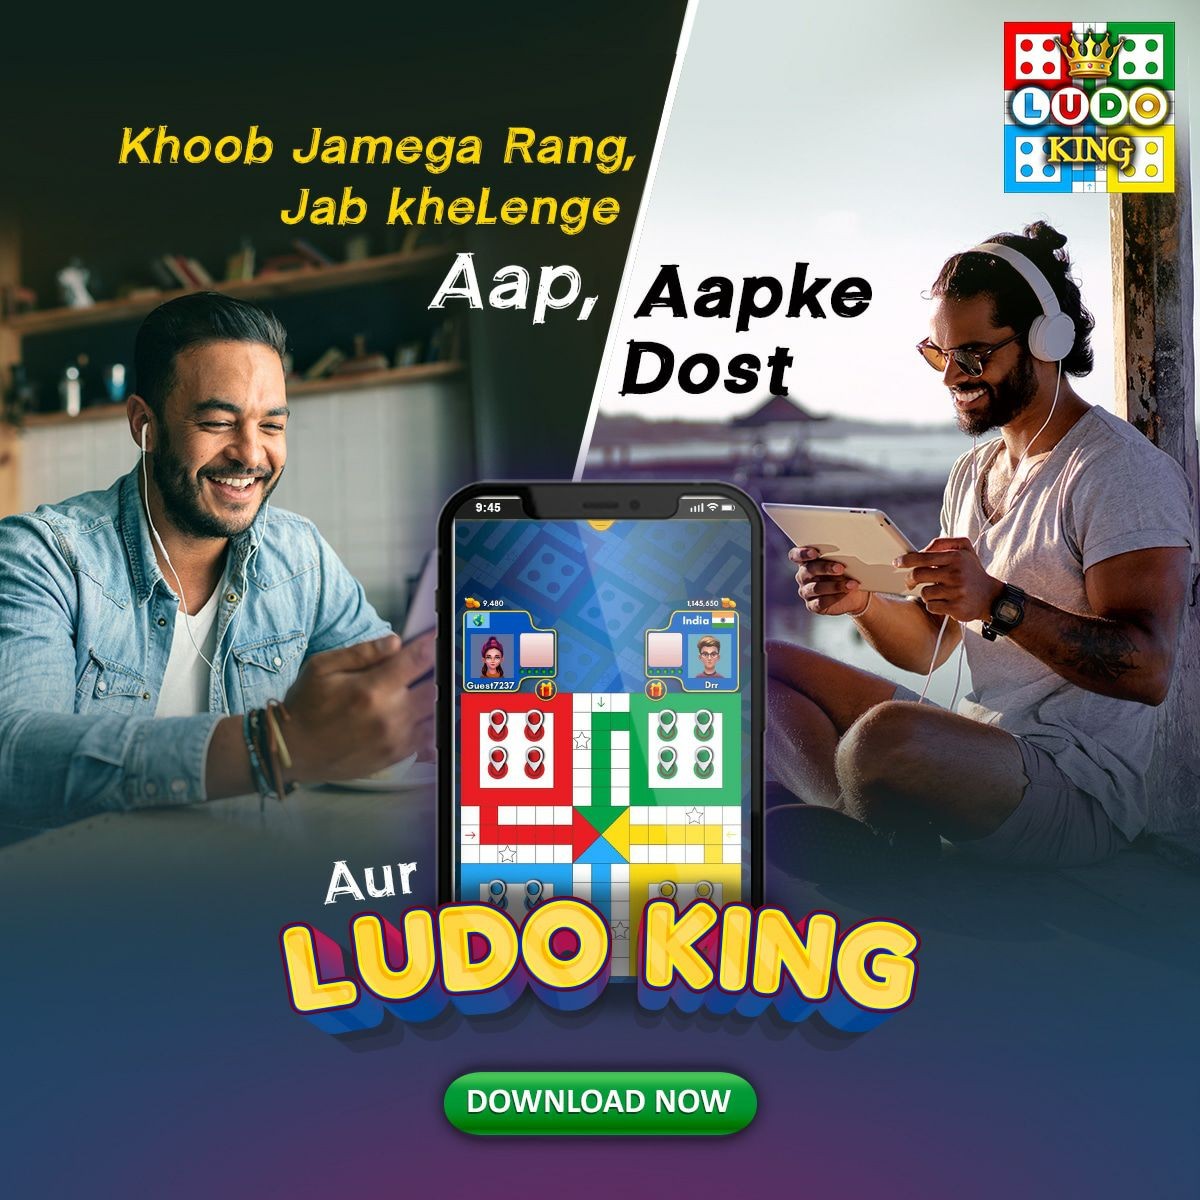 Ludo King' crosses 500 million downloads worldwide 